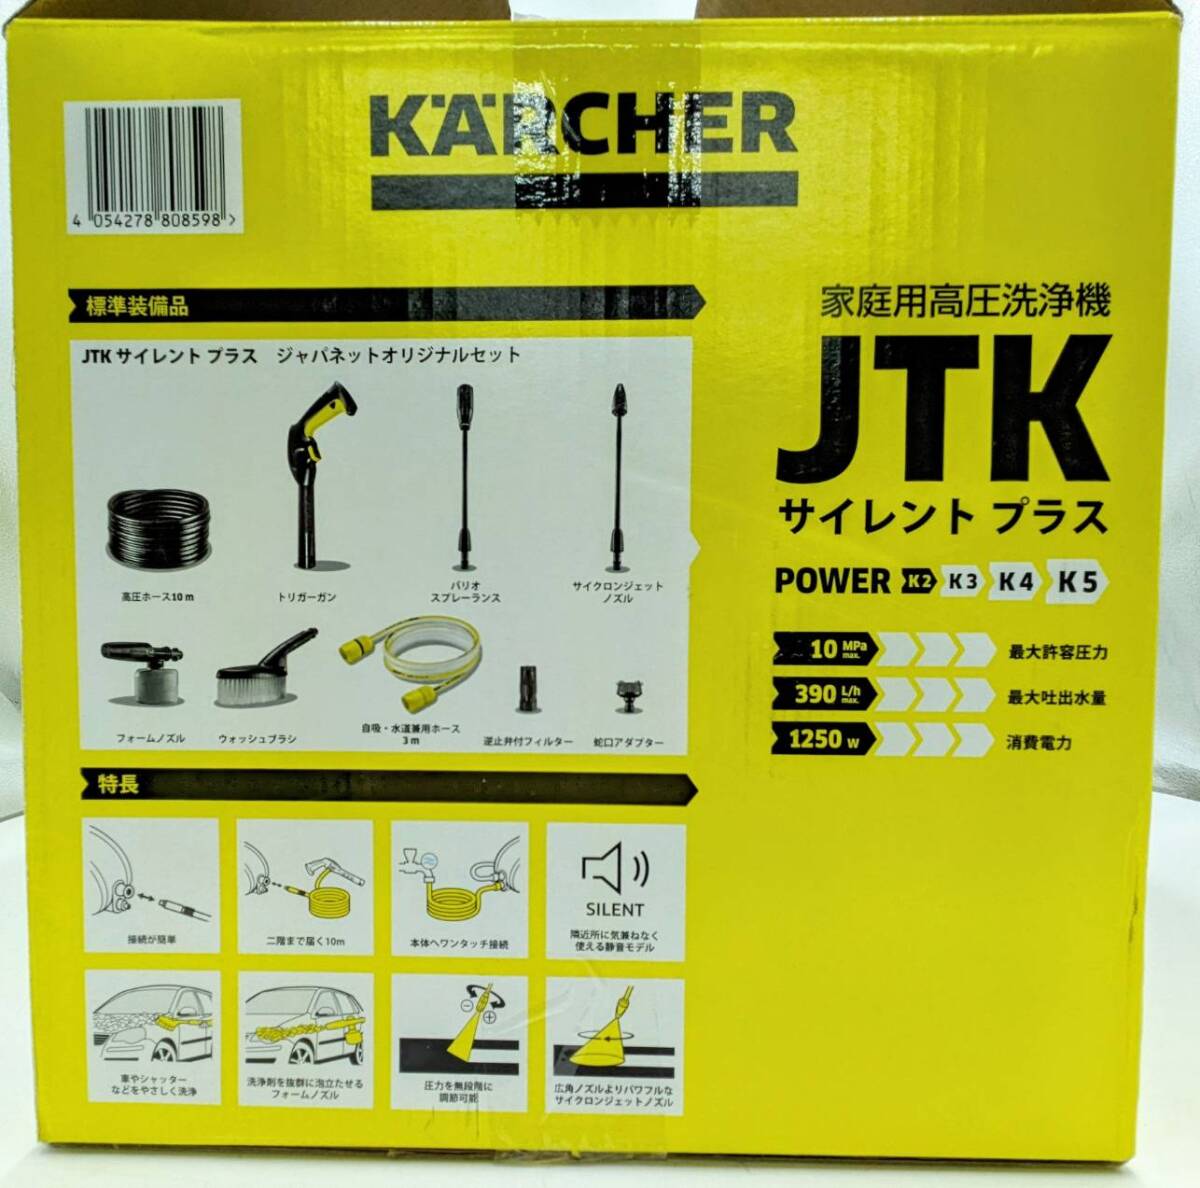 ケルヒャー KARCHER 家庭用高圧洗浄機 JTK SILENT PL サイレントプラス ジャパネットオリジナルセット 1.600-901.0 箱入り 静音 掃除用品の画像3